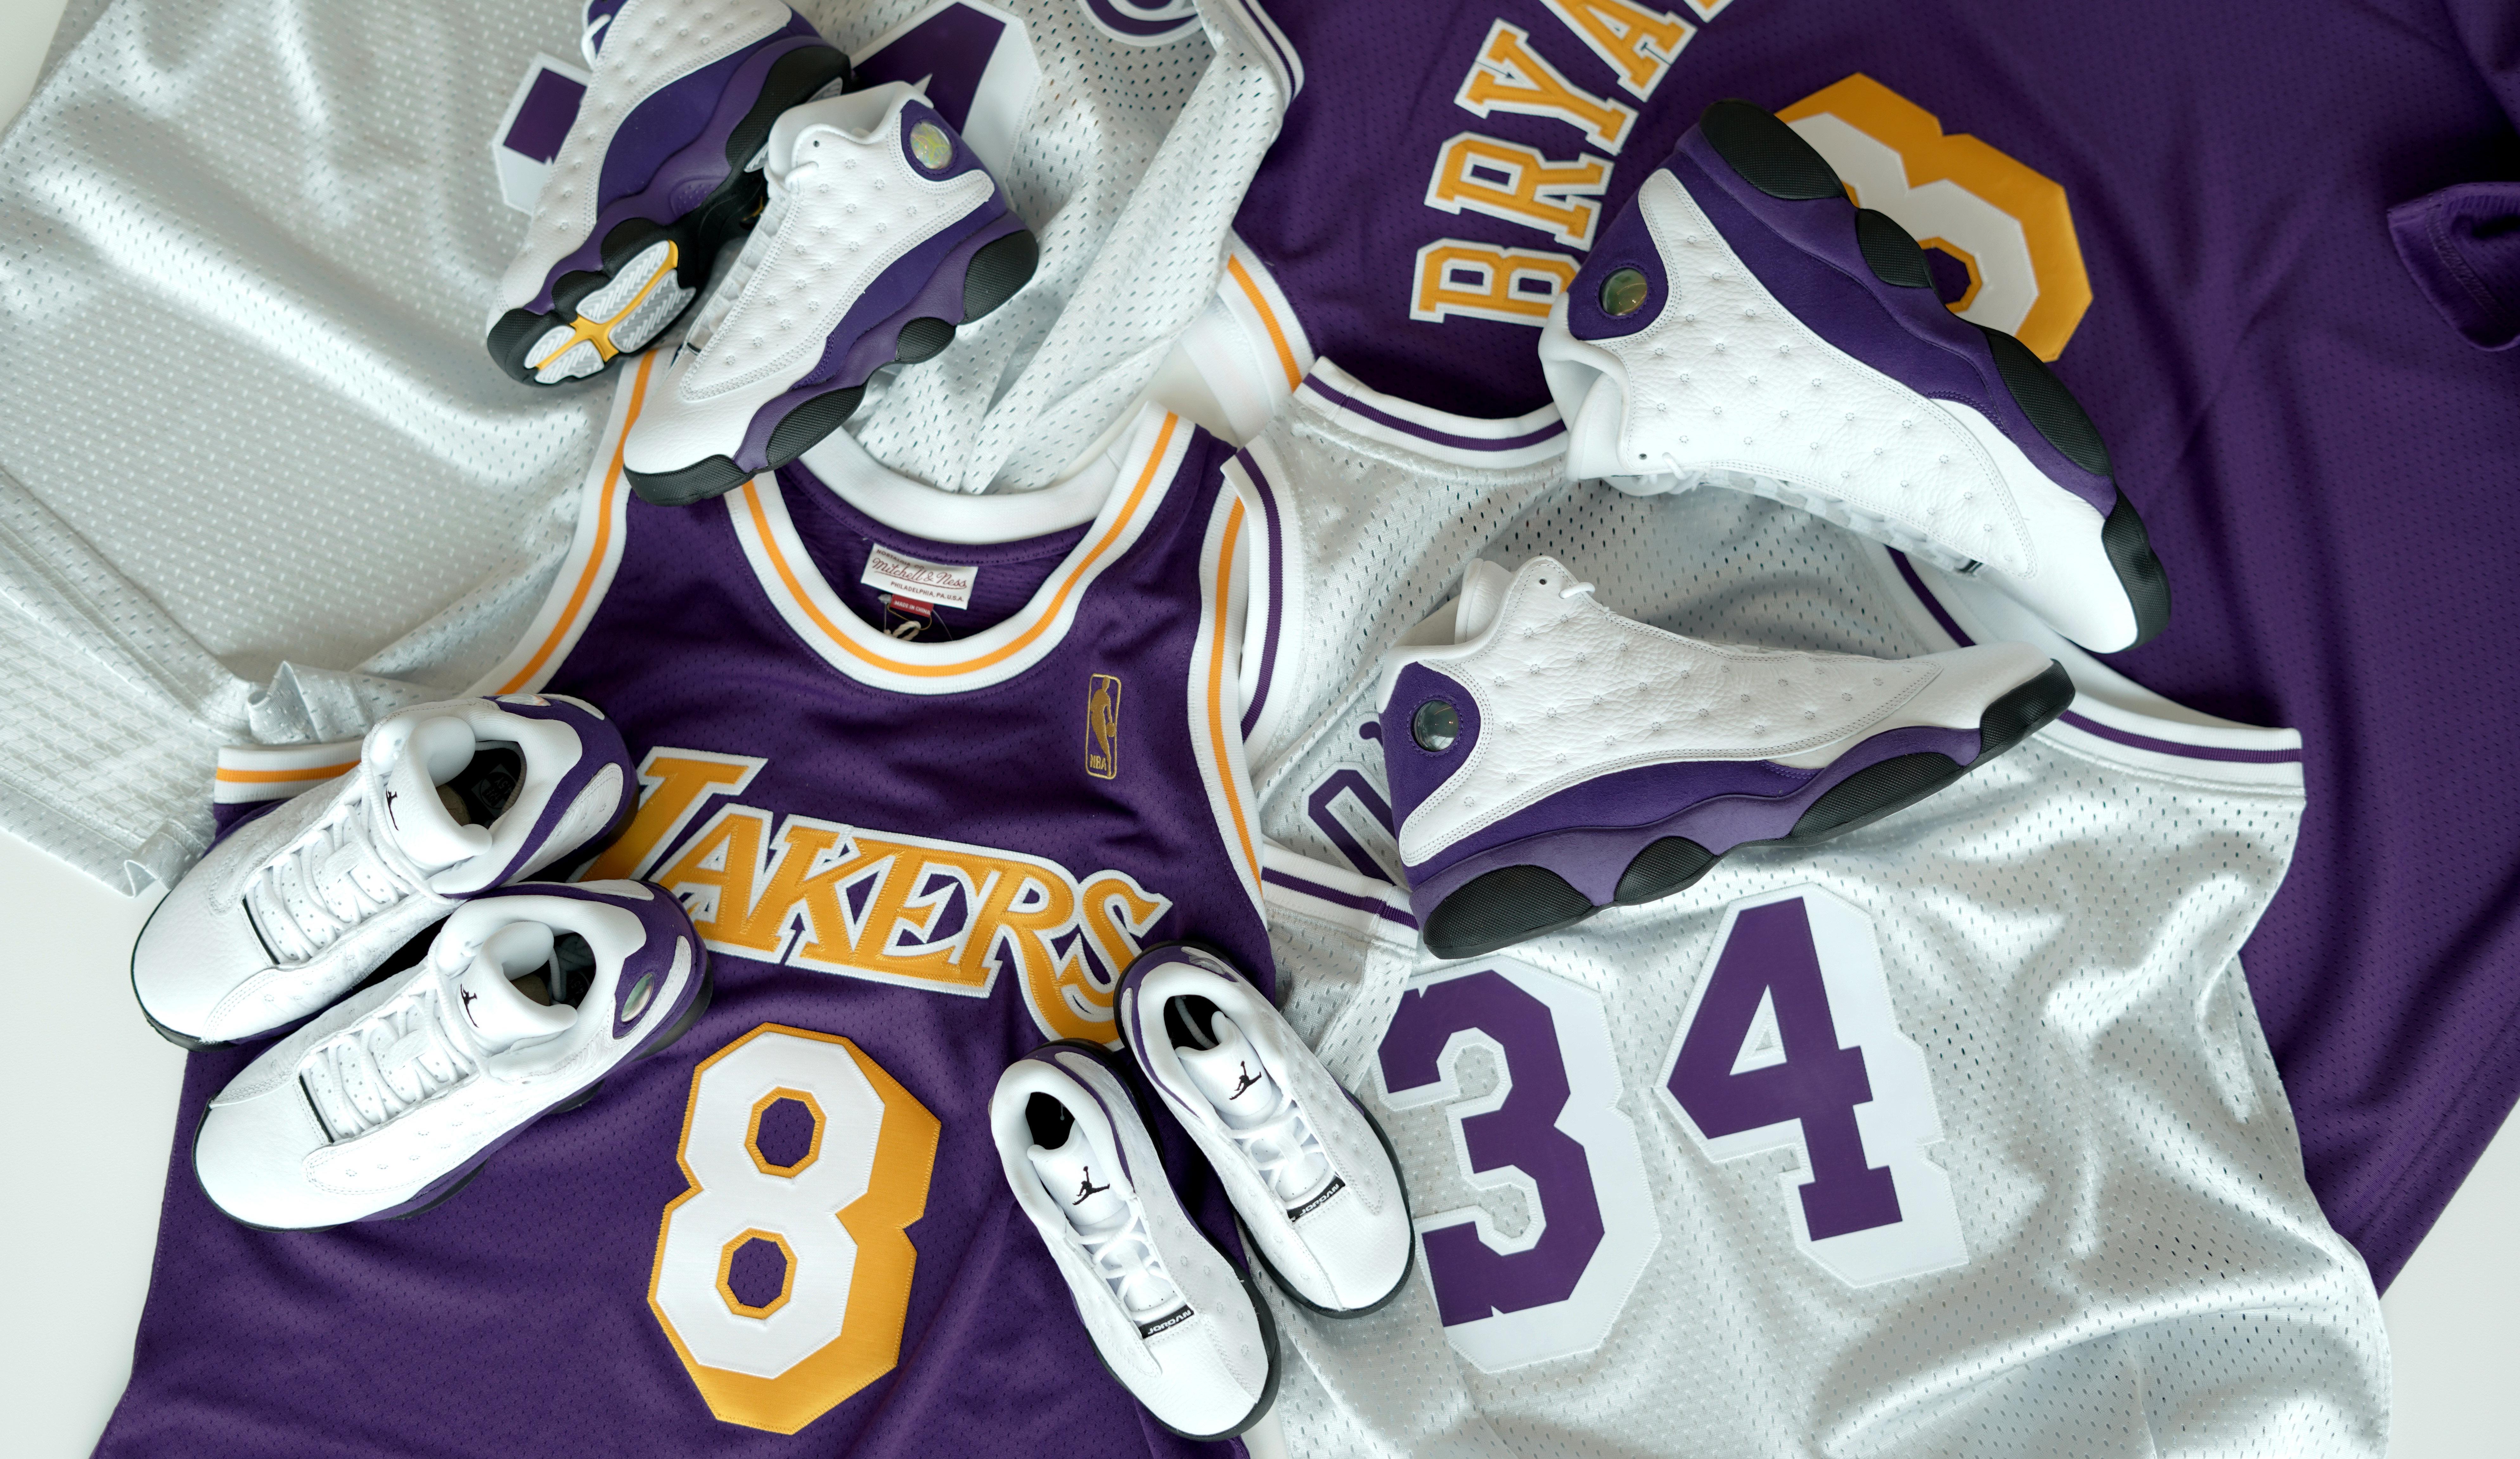 Air Jordan 13 Retro Lakers Men's Shoe - White/Court Purple/University Gold/Black - 10.5